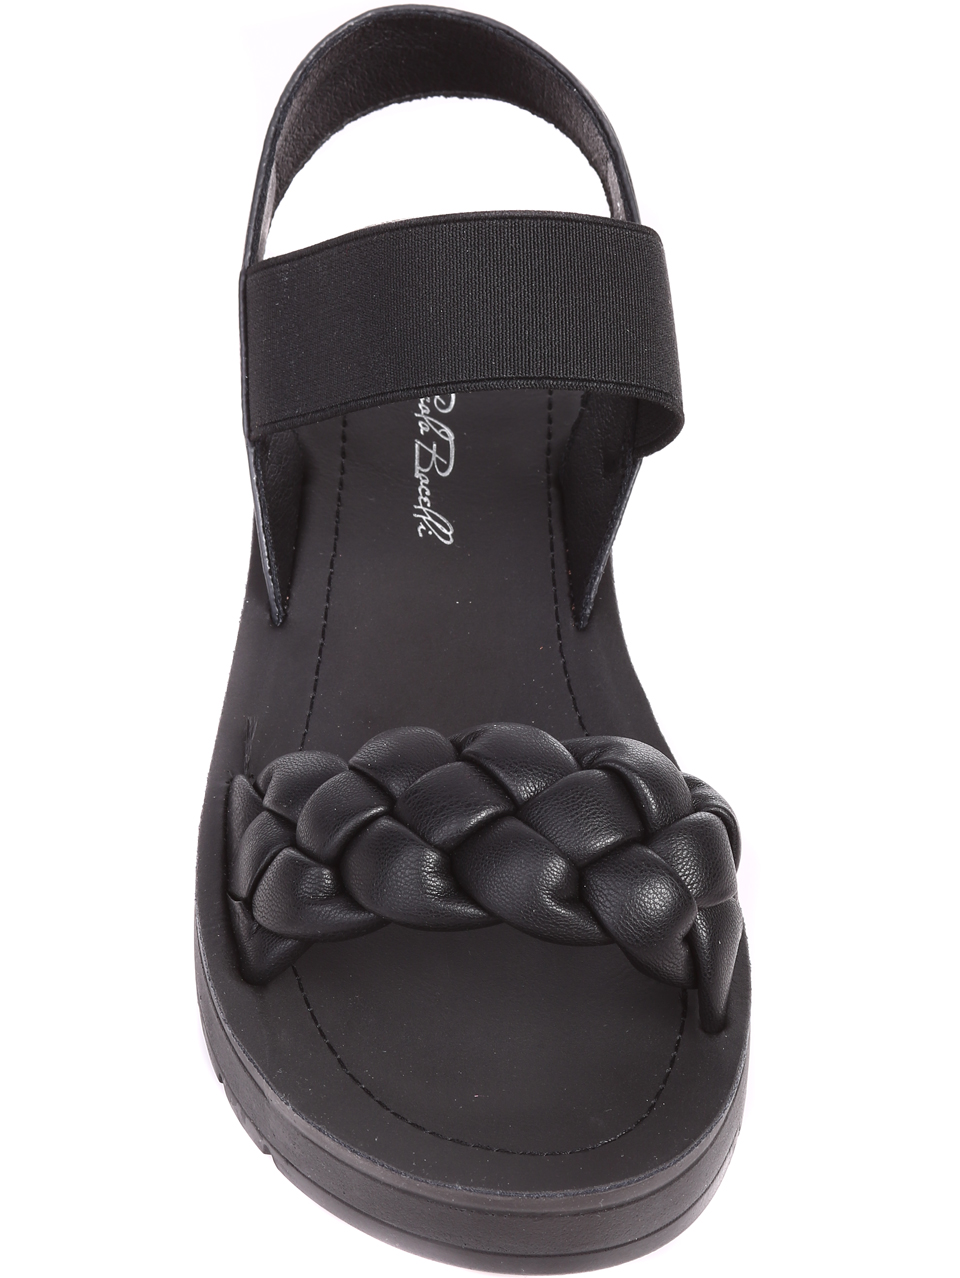 Ежедневни дамски сандали на платформа в черно 4F-22222 black